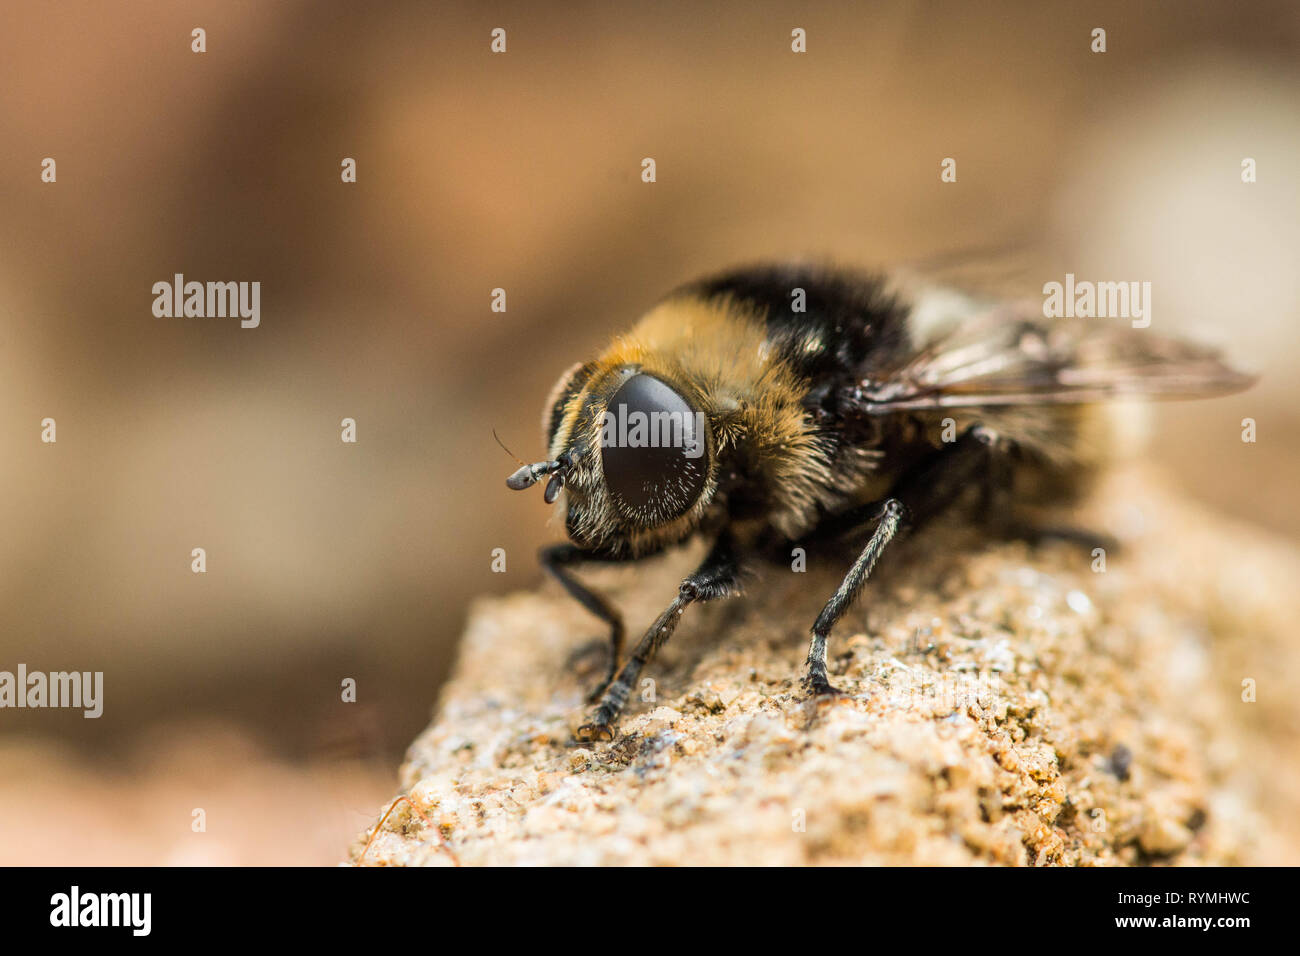 British bee Stock Photo